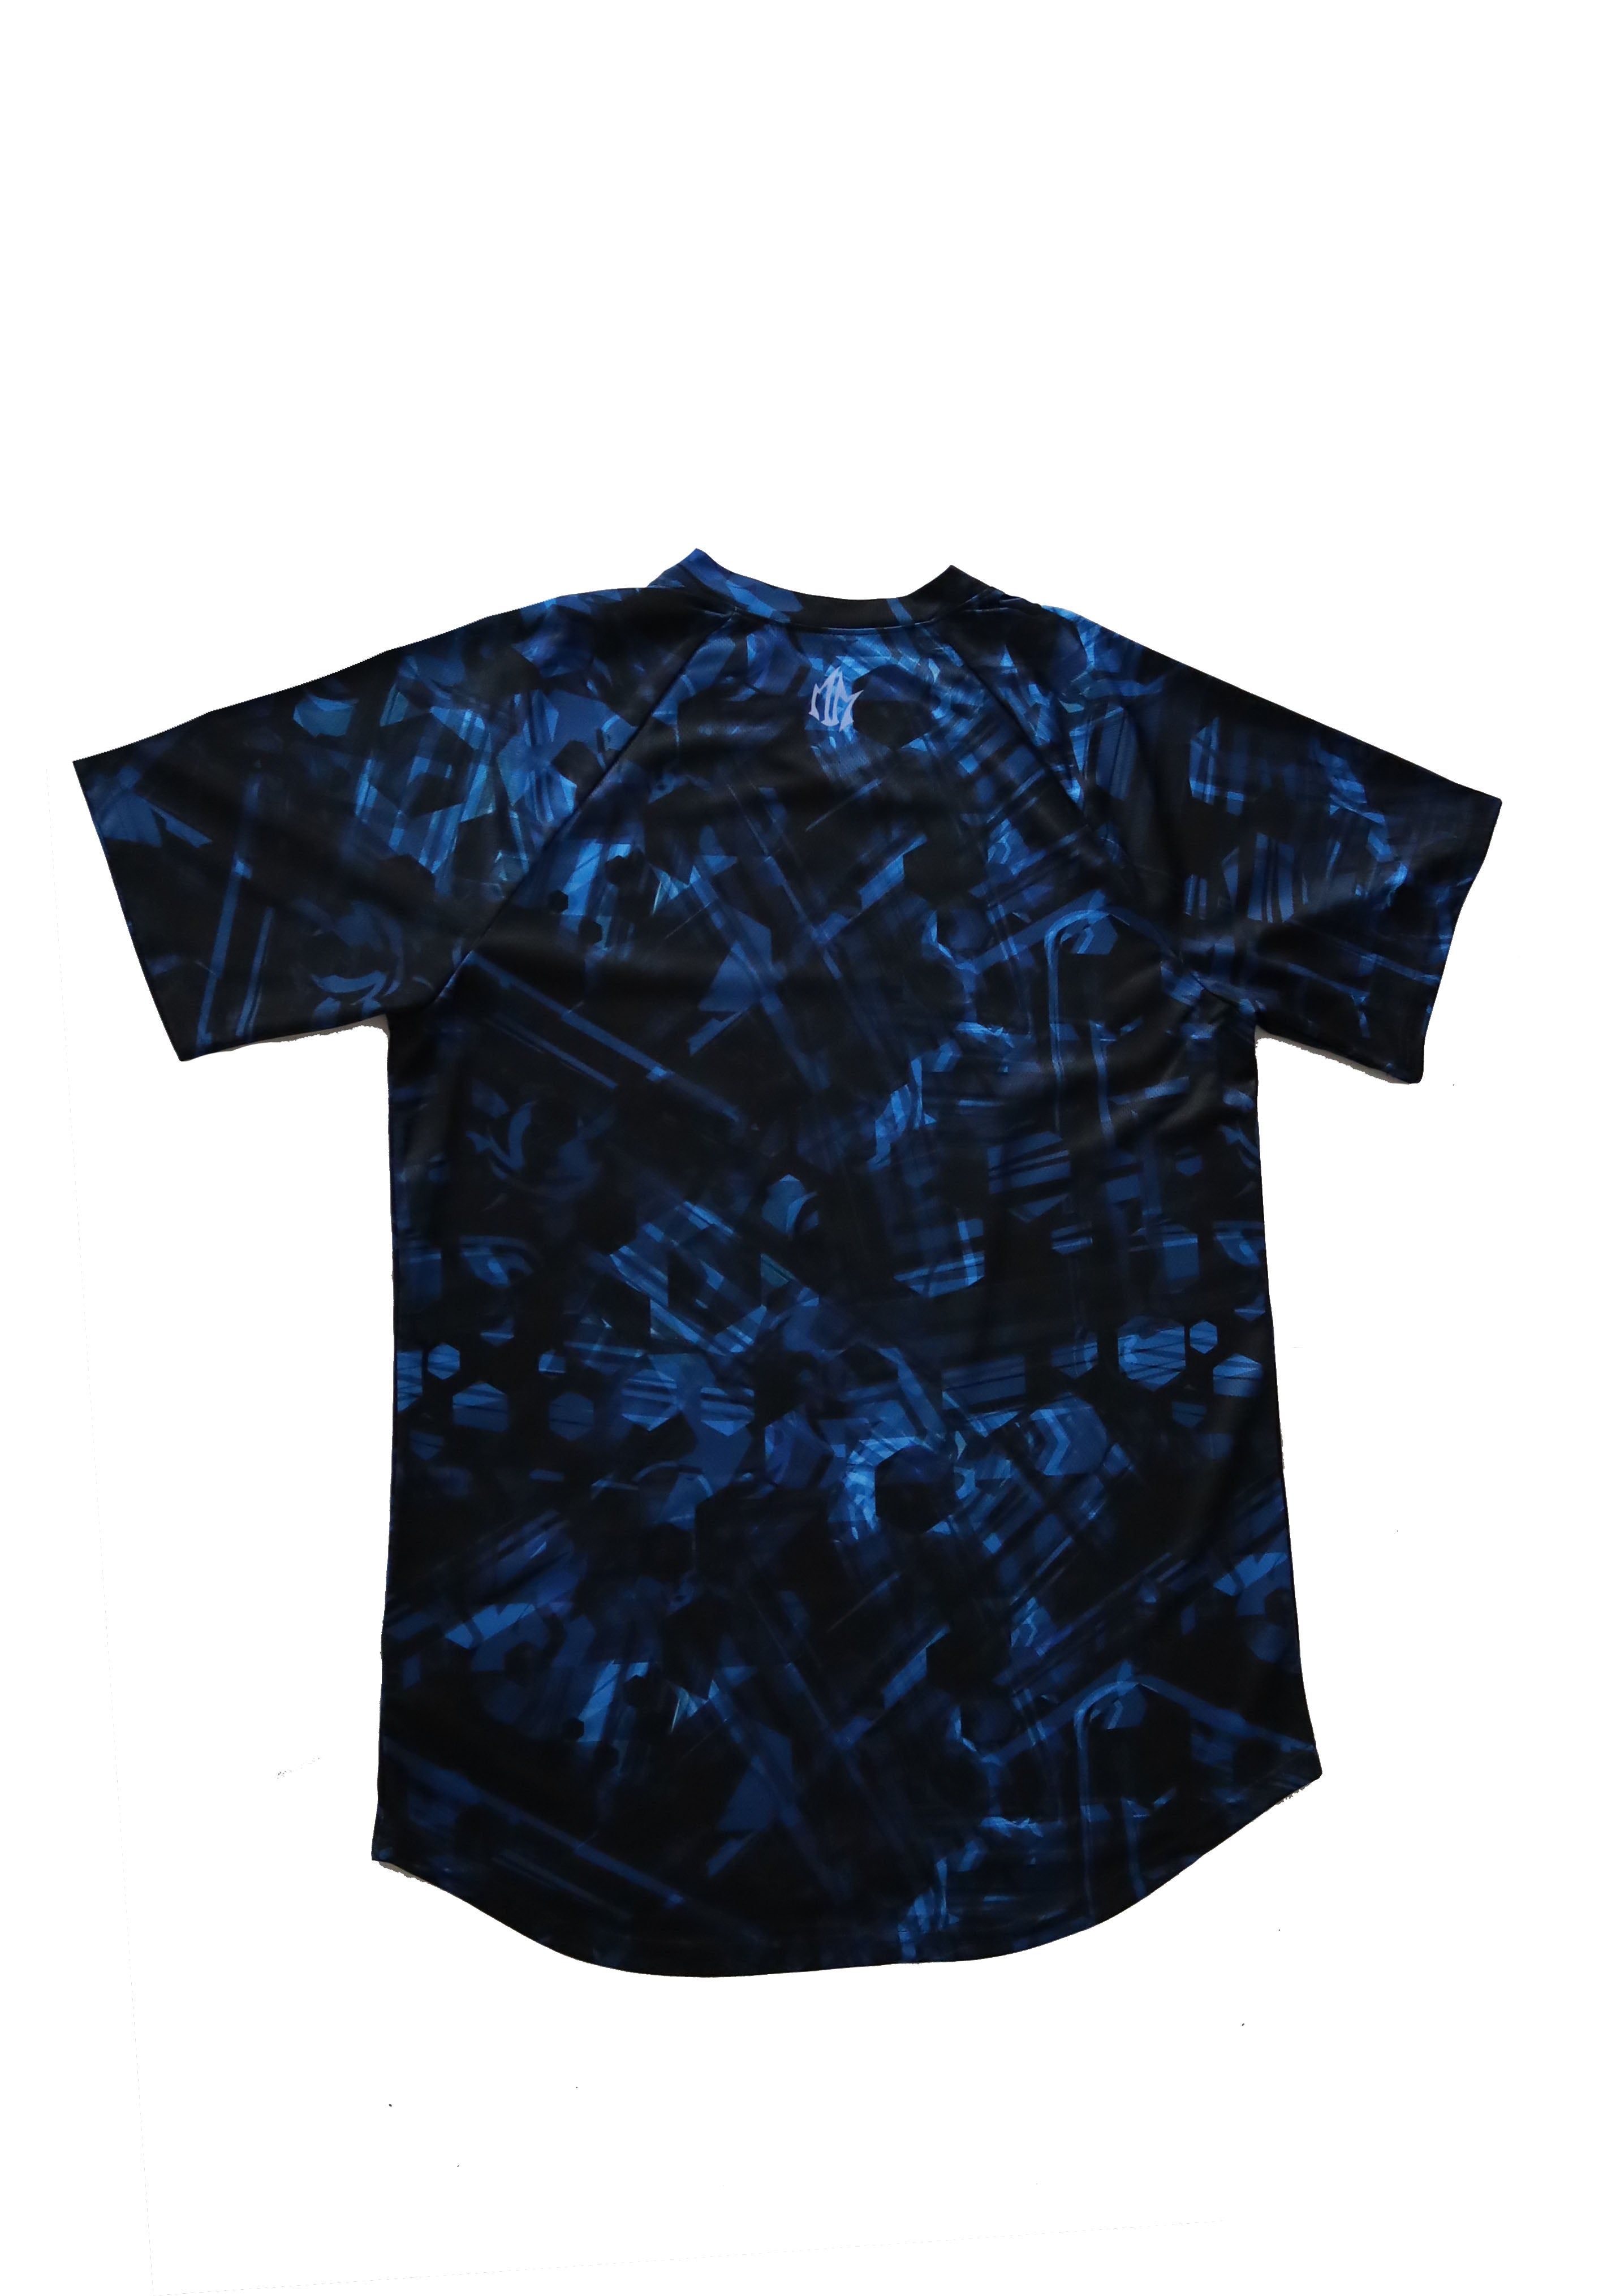 T-shirt Motion Maker Moisture Management (Homme) - Bleu